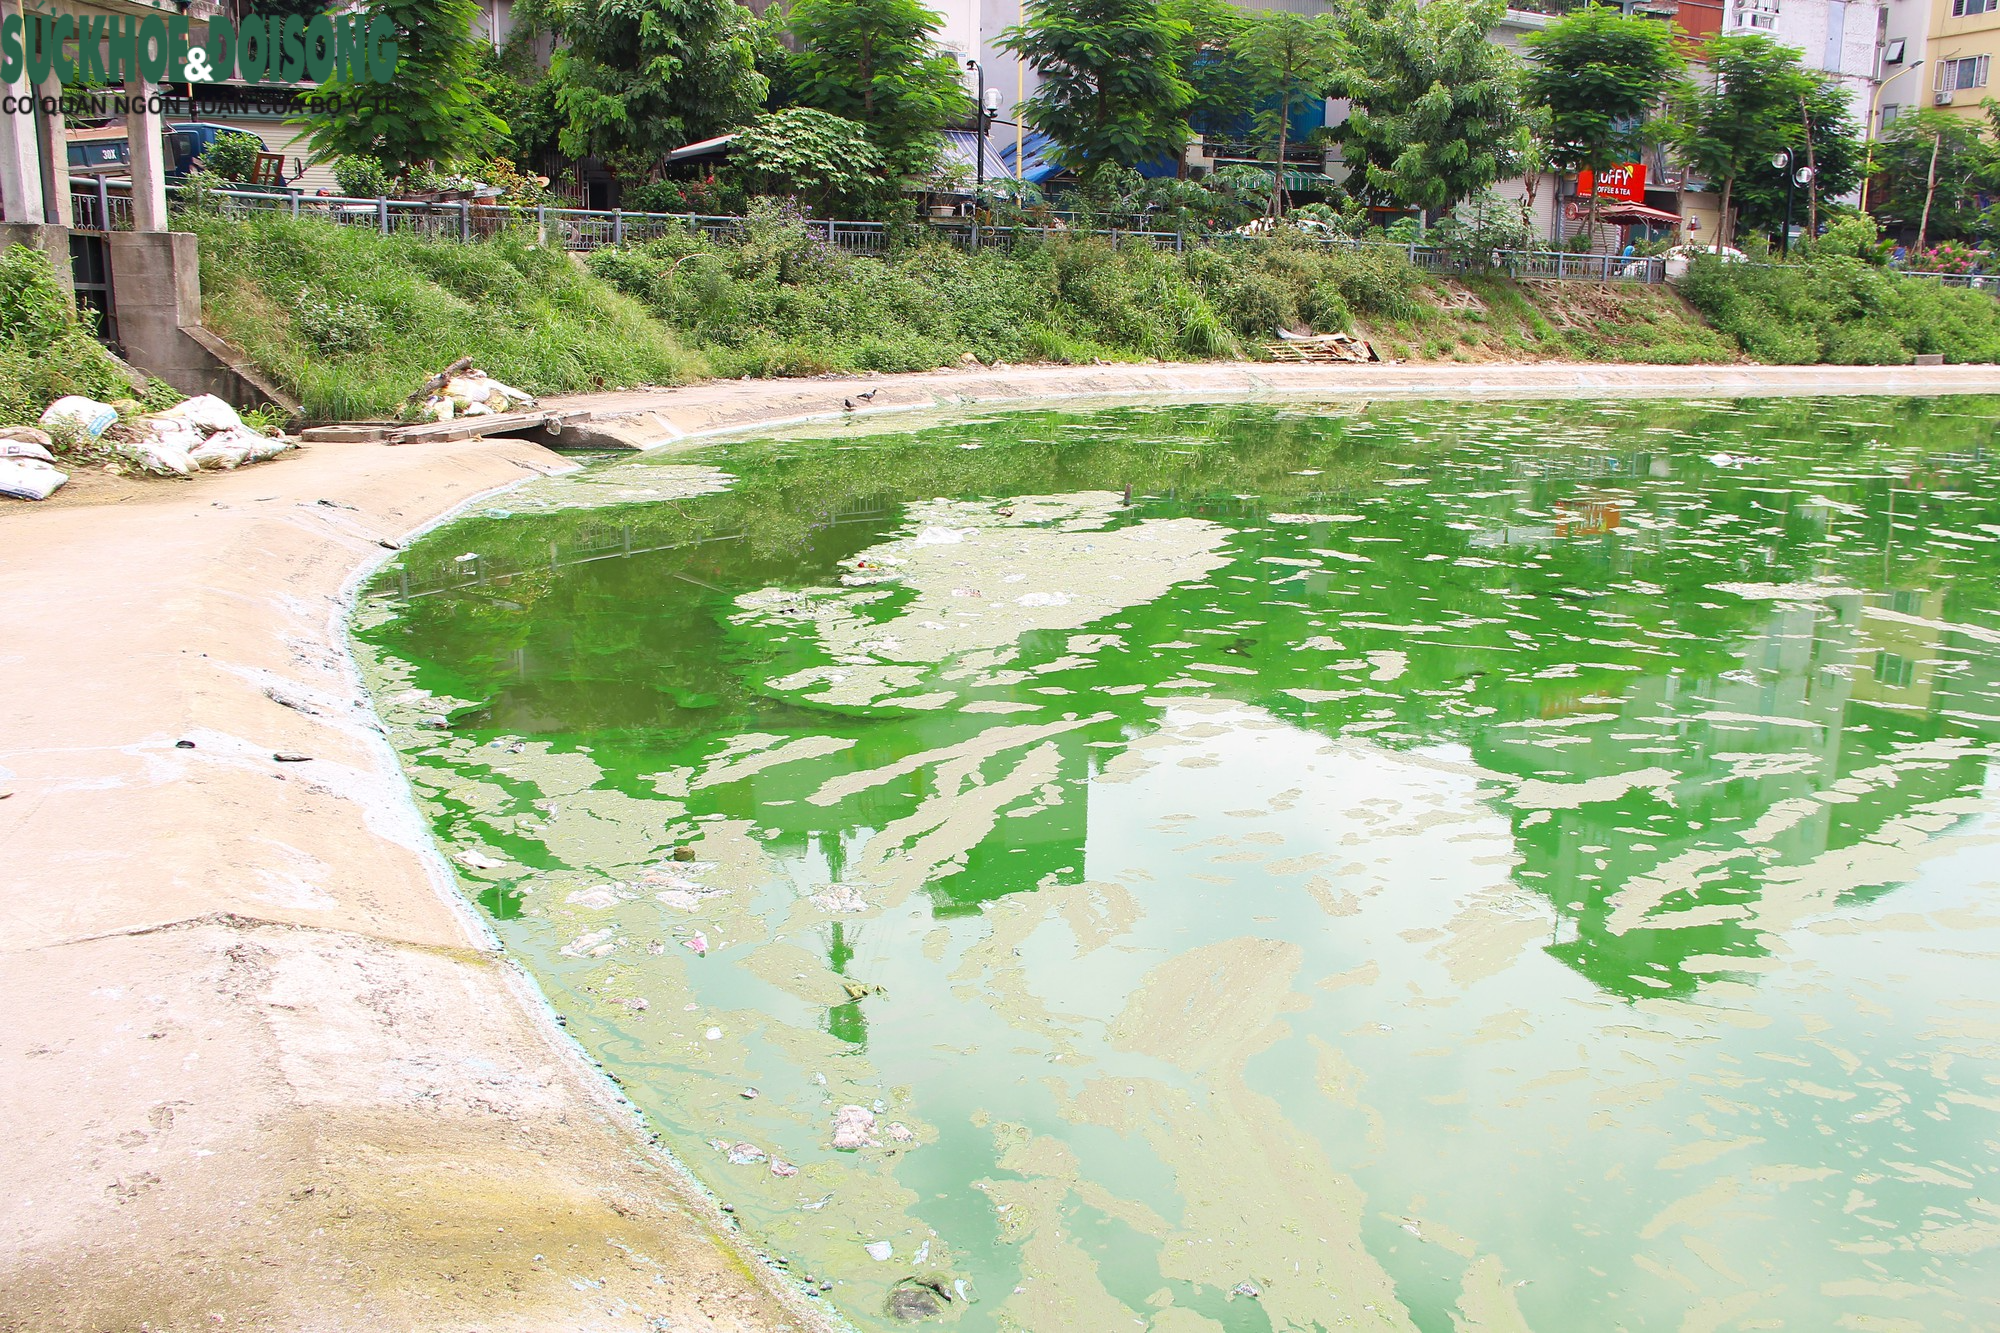 Hồ nước tại trung tâm Hà Nội ô nhiễm, mặt hồ nổi mảng bám, nước bốc mùi - Ảnh 6.